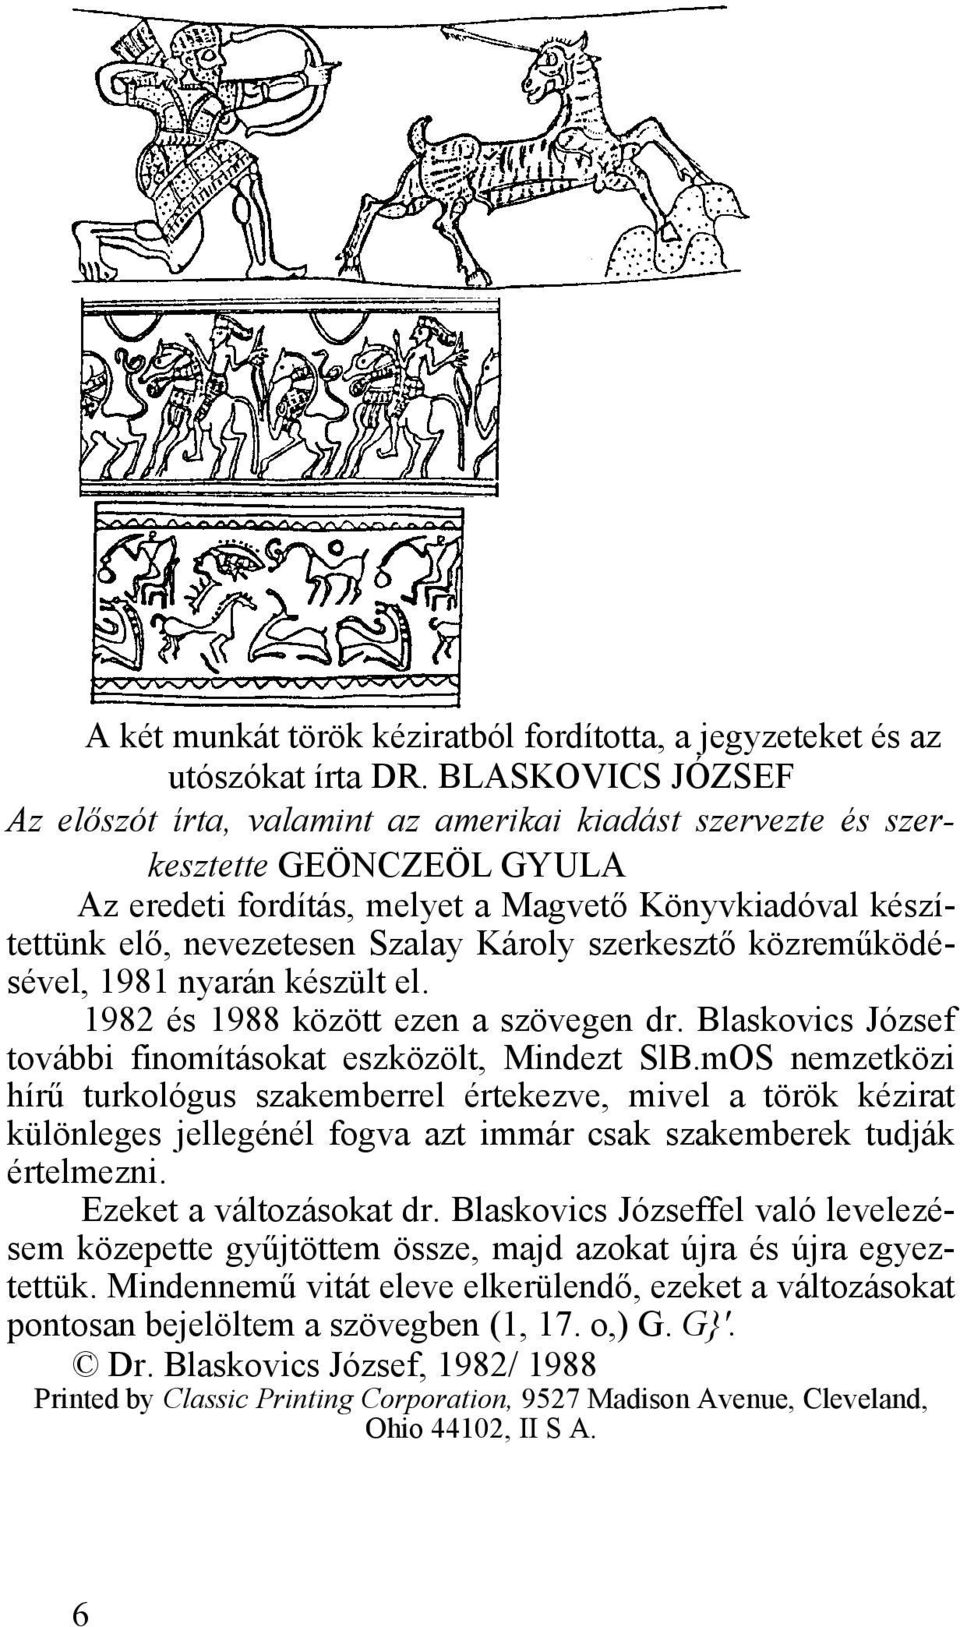 Károly szerkesztő közreműködésével, 1981 nyarán készült el. 1982 és 1988 között ezen a szövegen dr. Blaskovics József további finomításokat eszközölt, Mindezt SlB.